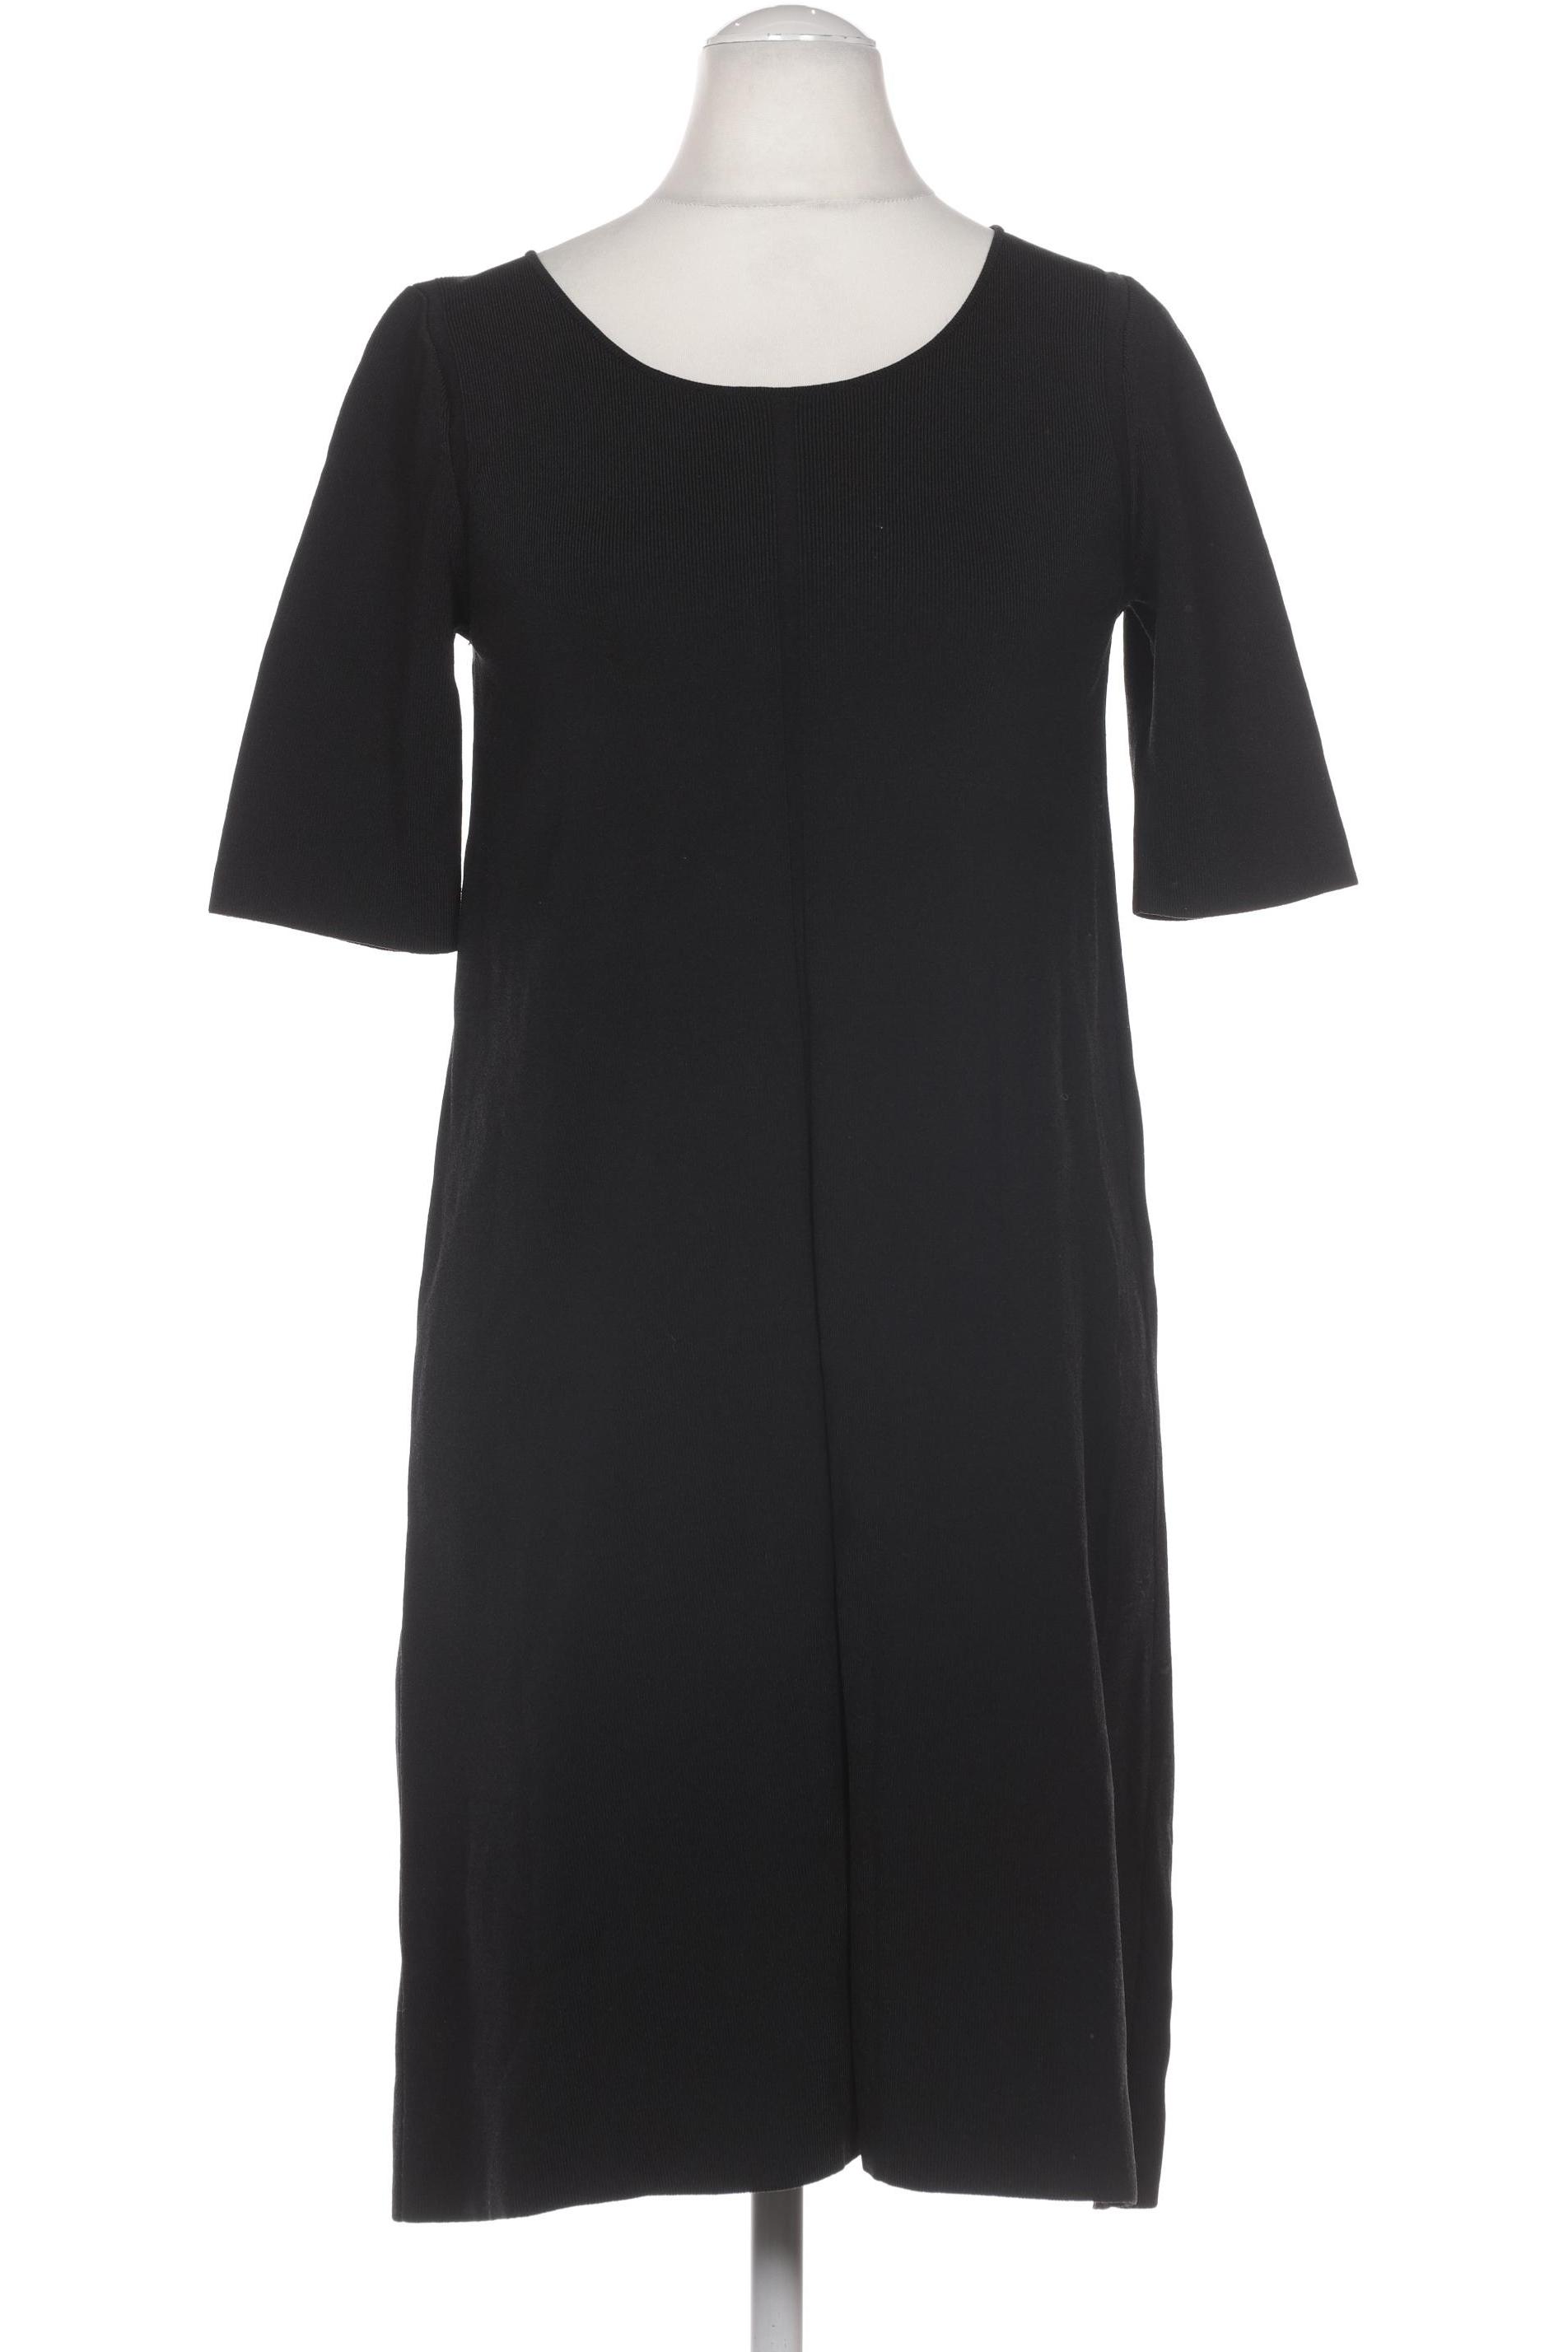 COS Damen Kleid, schwarz, Gr. 36 von COS